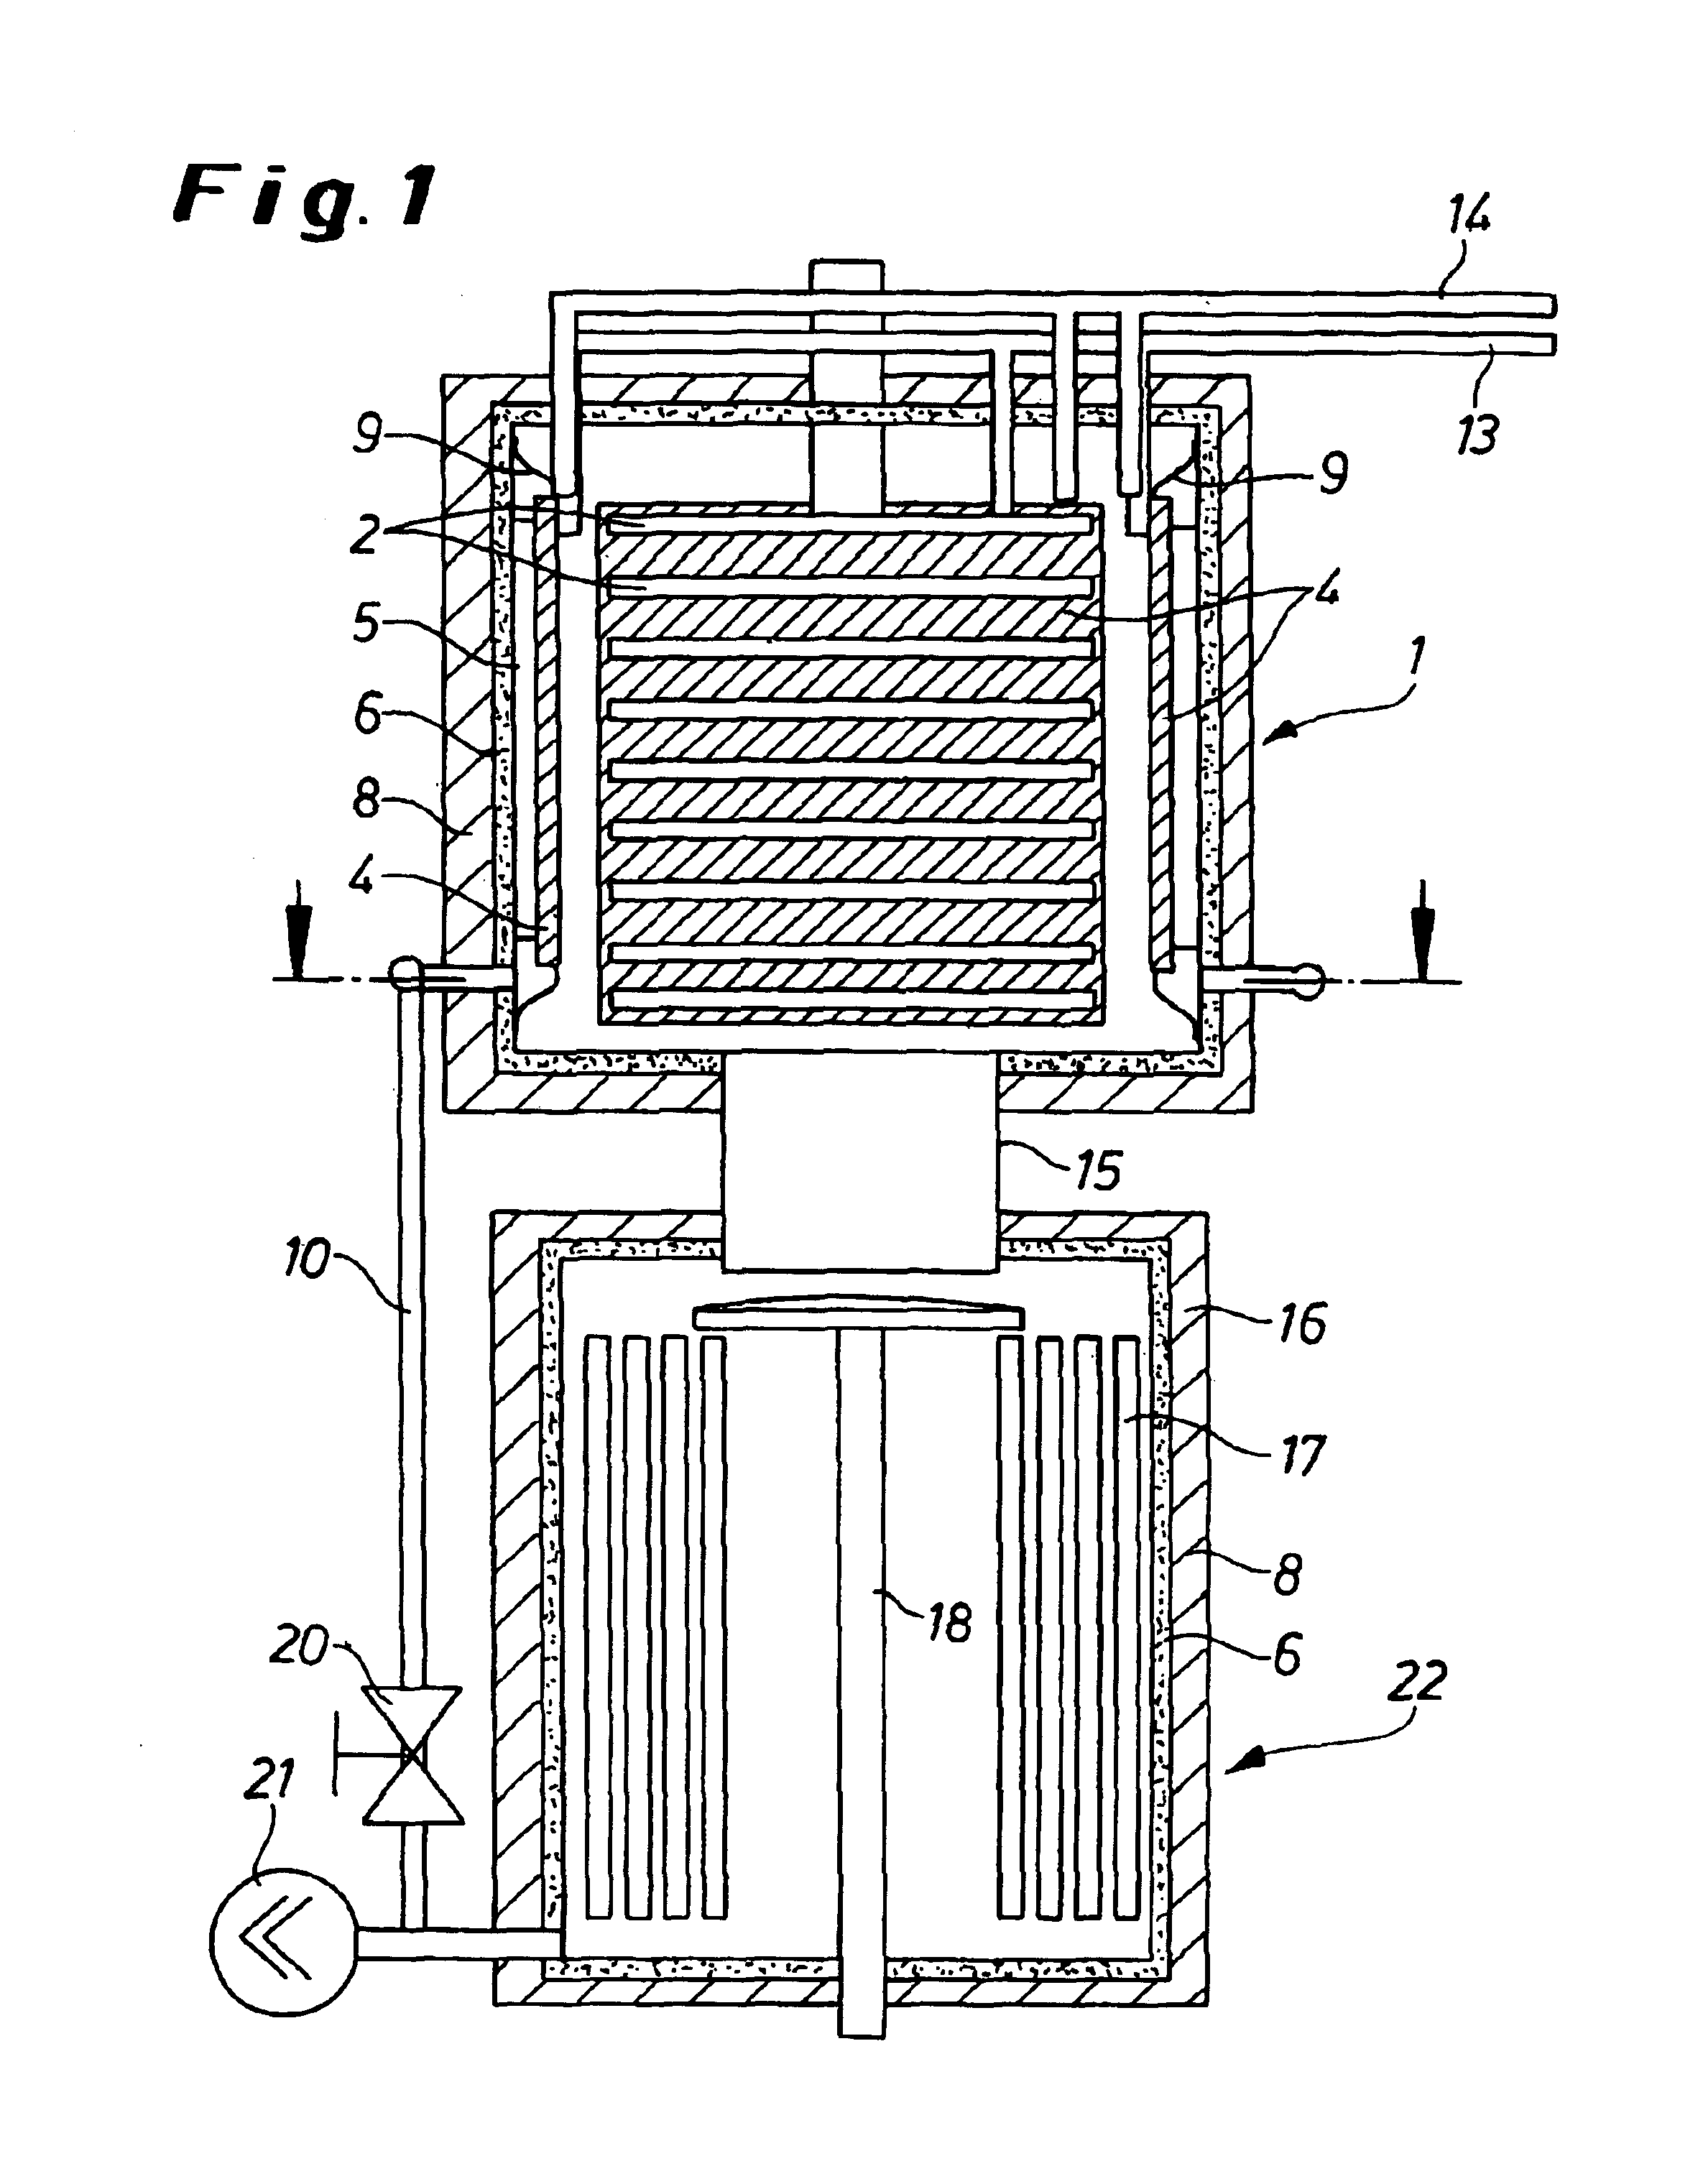 Freeze-drying apparatus